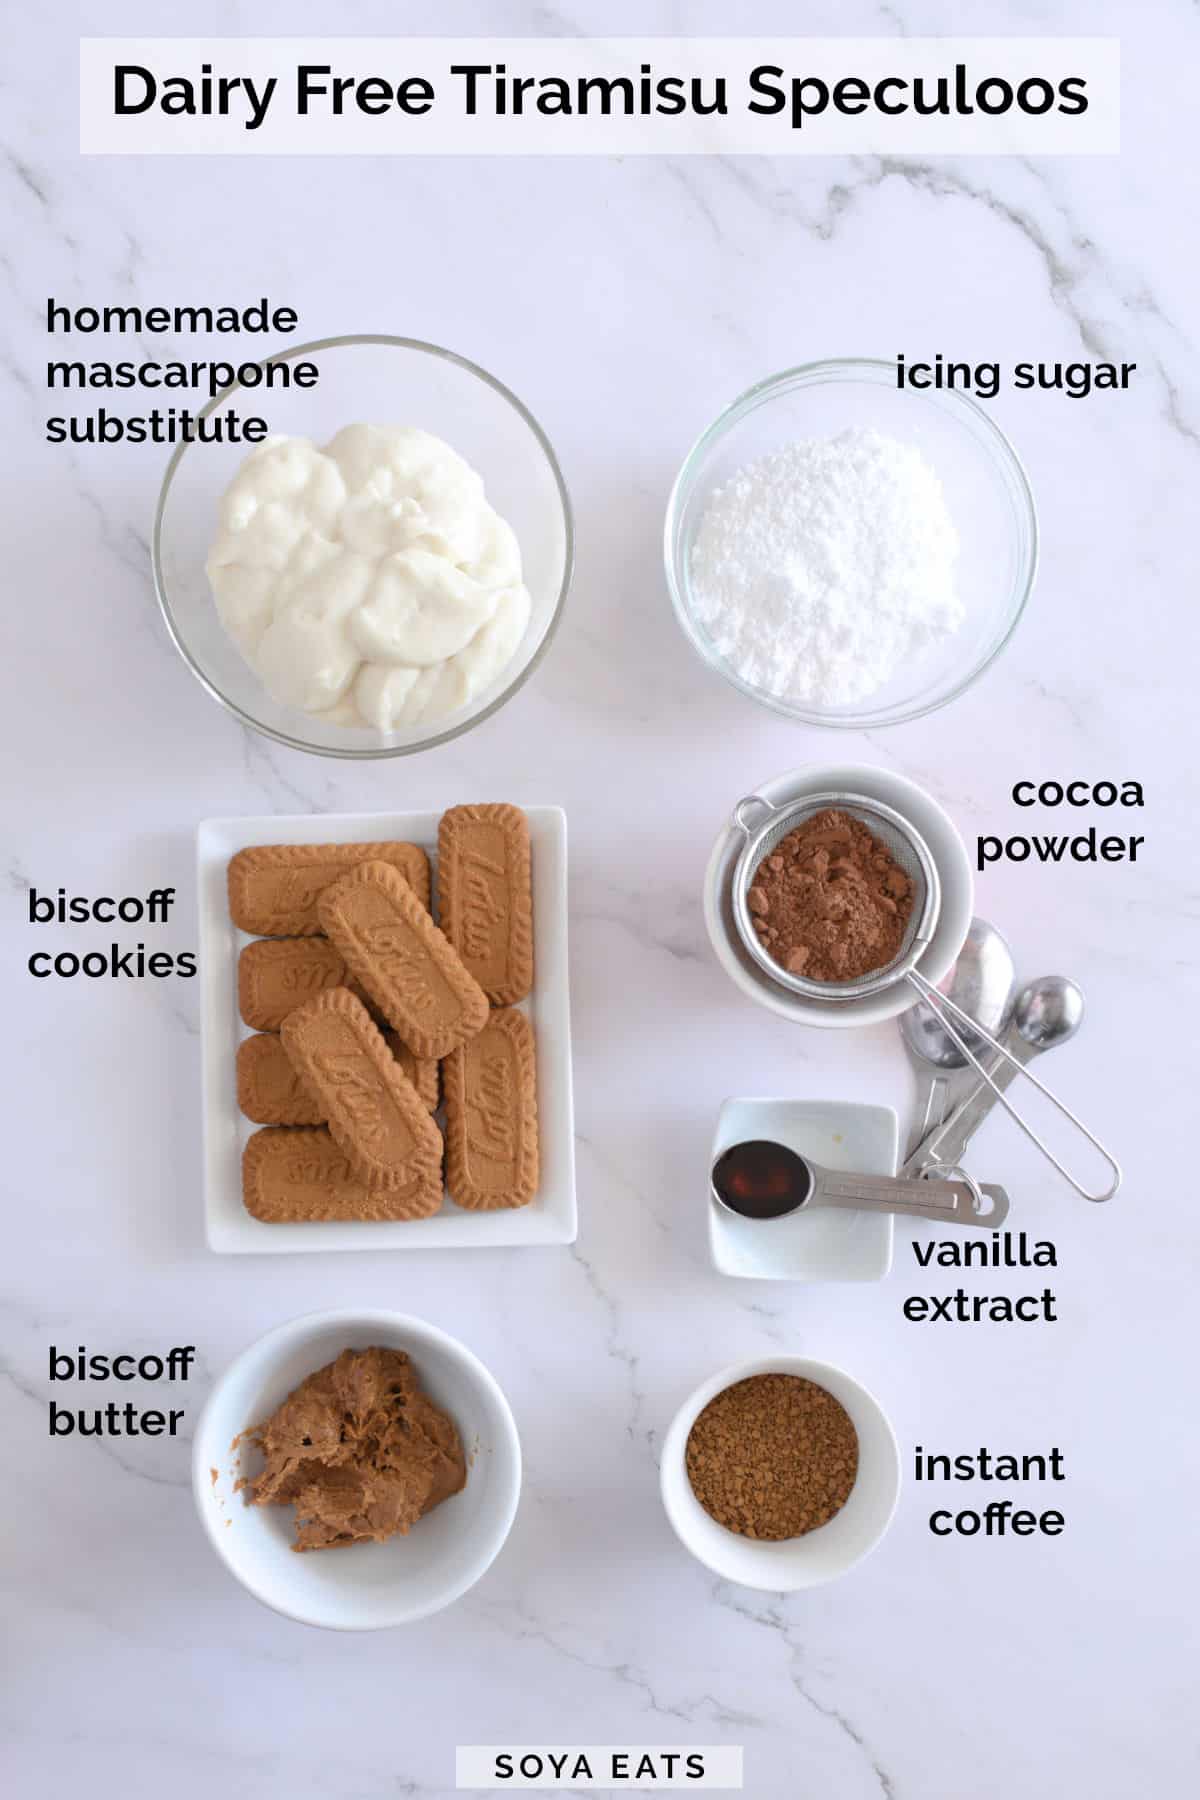 Image of ingredients needed to make tiramisu speculoos.